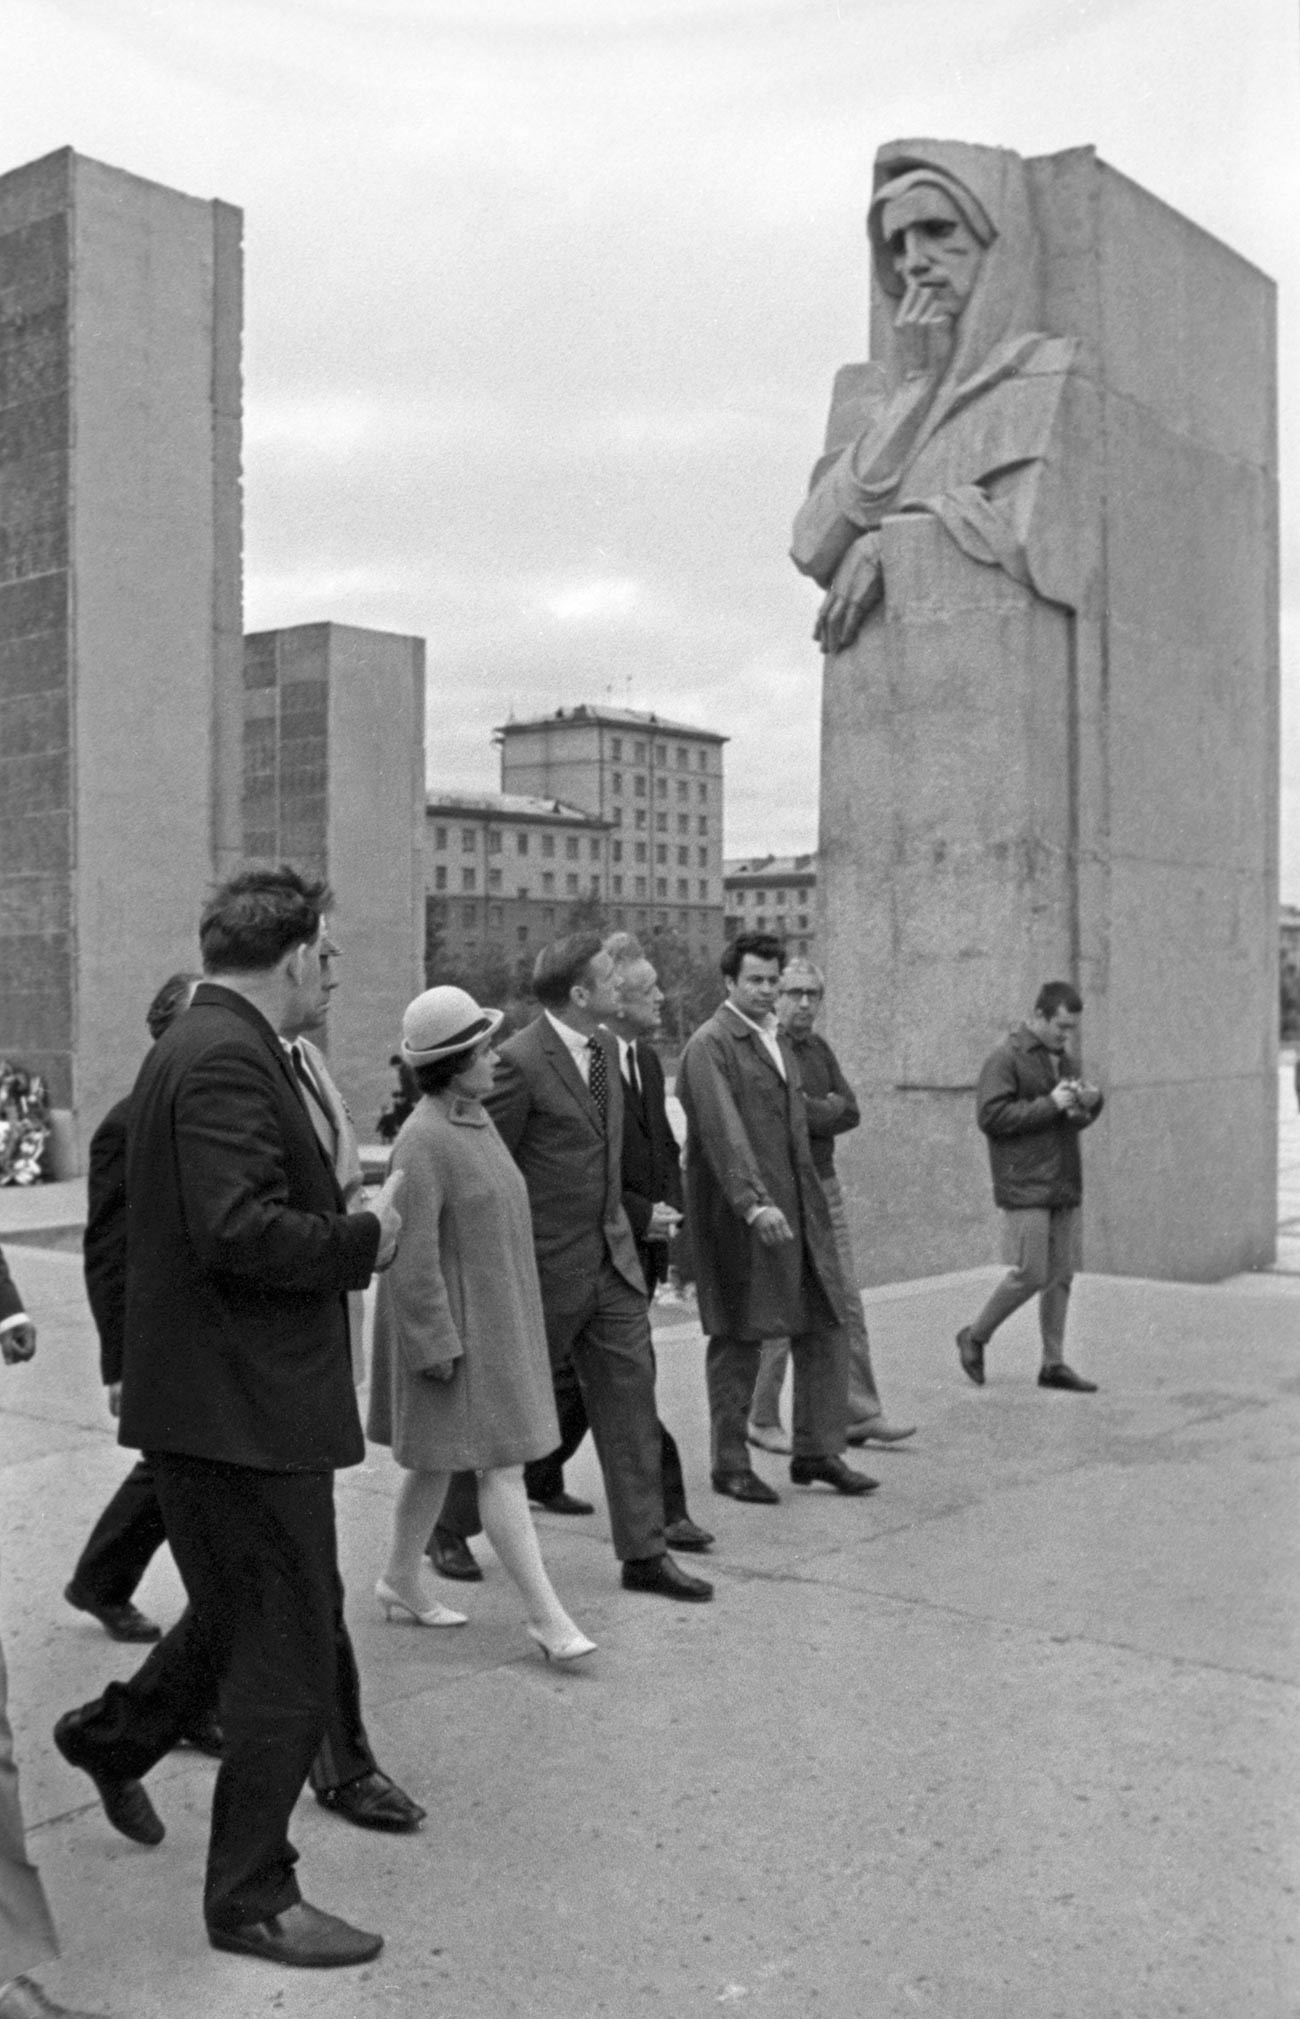 Armstrong visita il complesso commemorativo Monumento alla Gloria a Novosibirsk